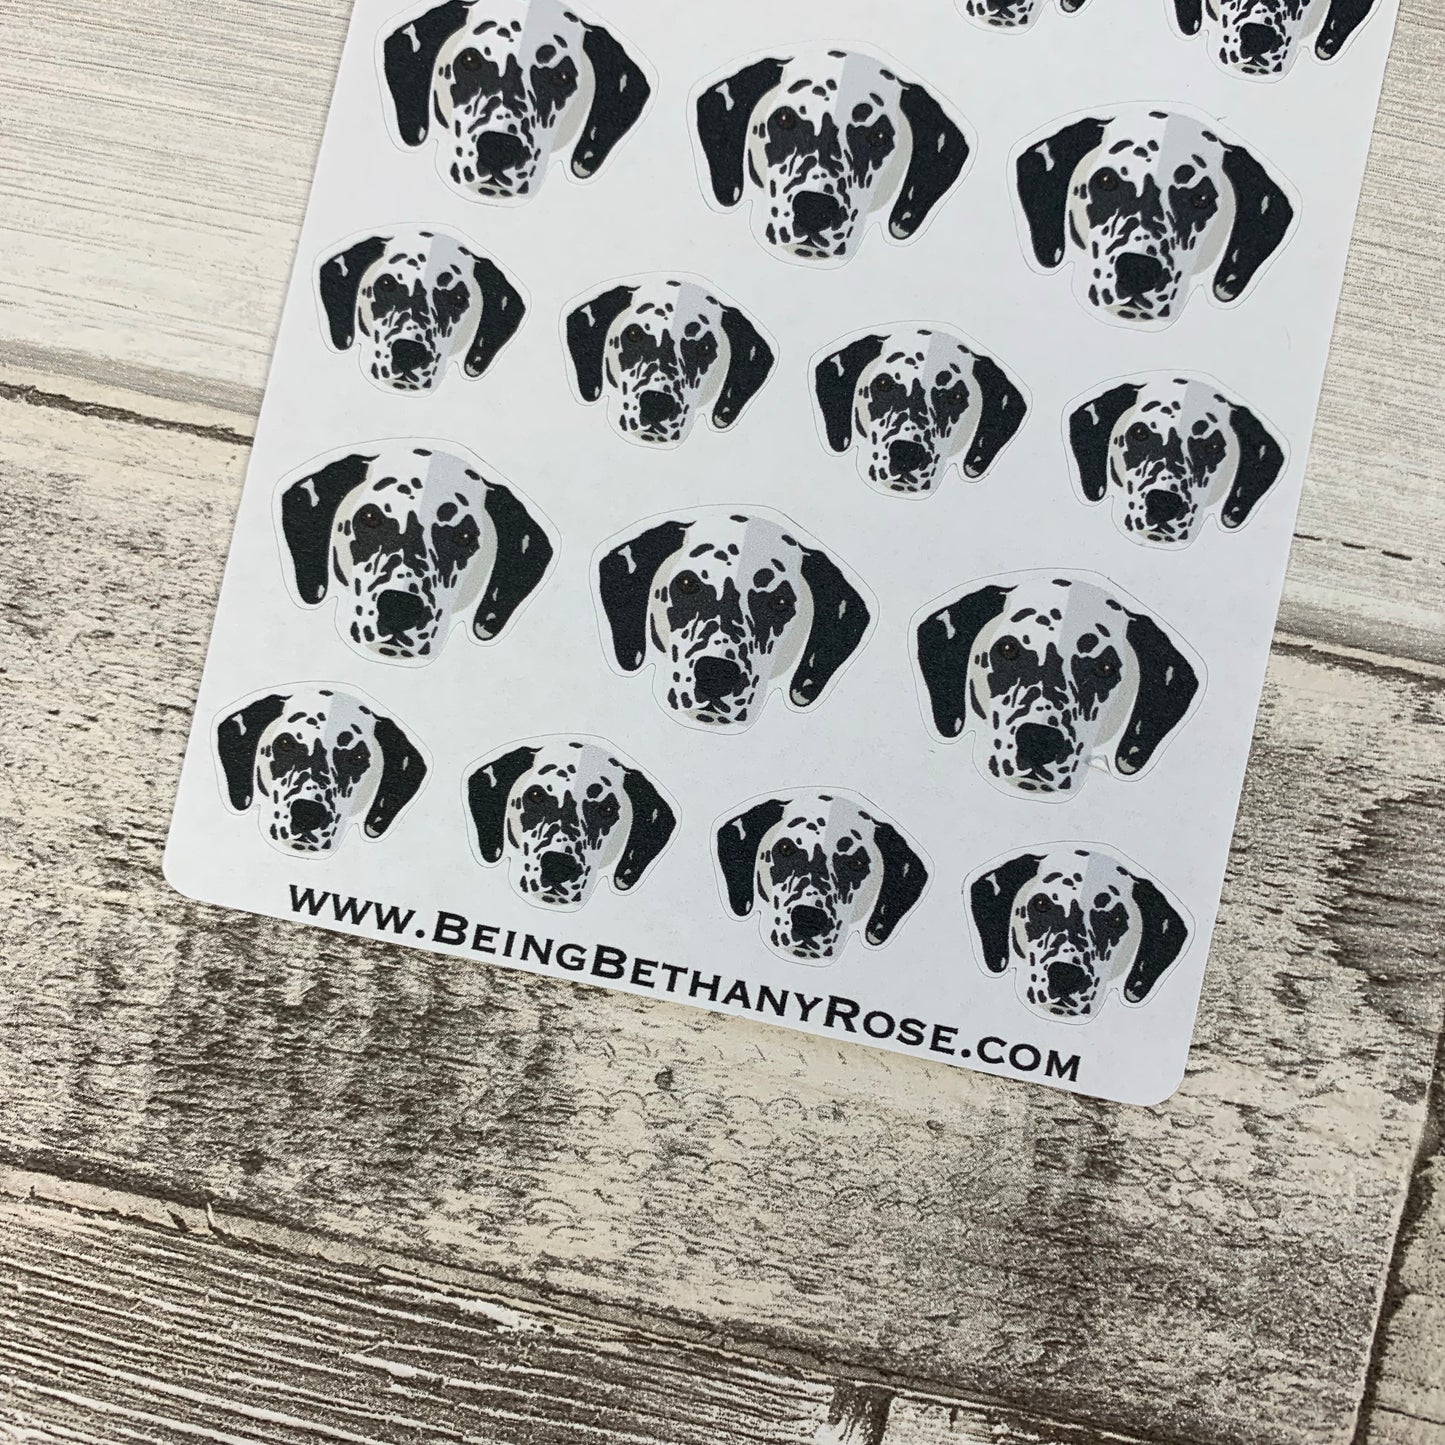 Dalmatian stickers (DPD456)